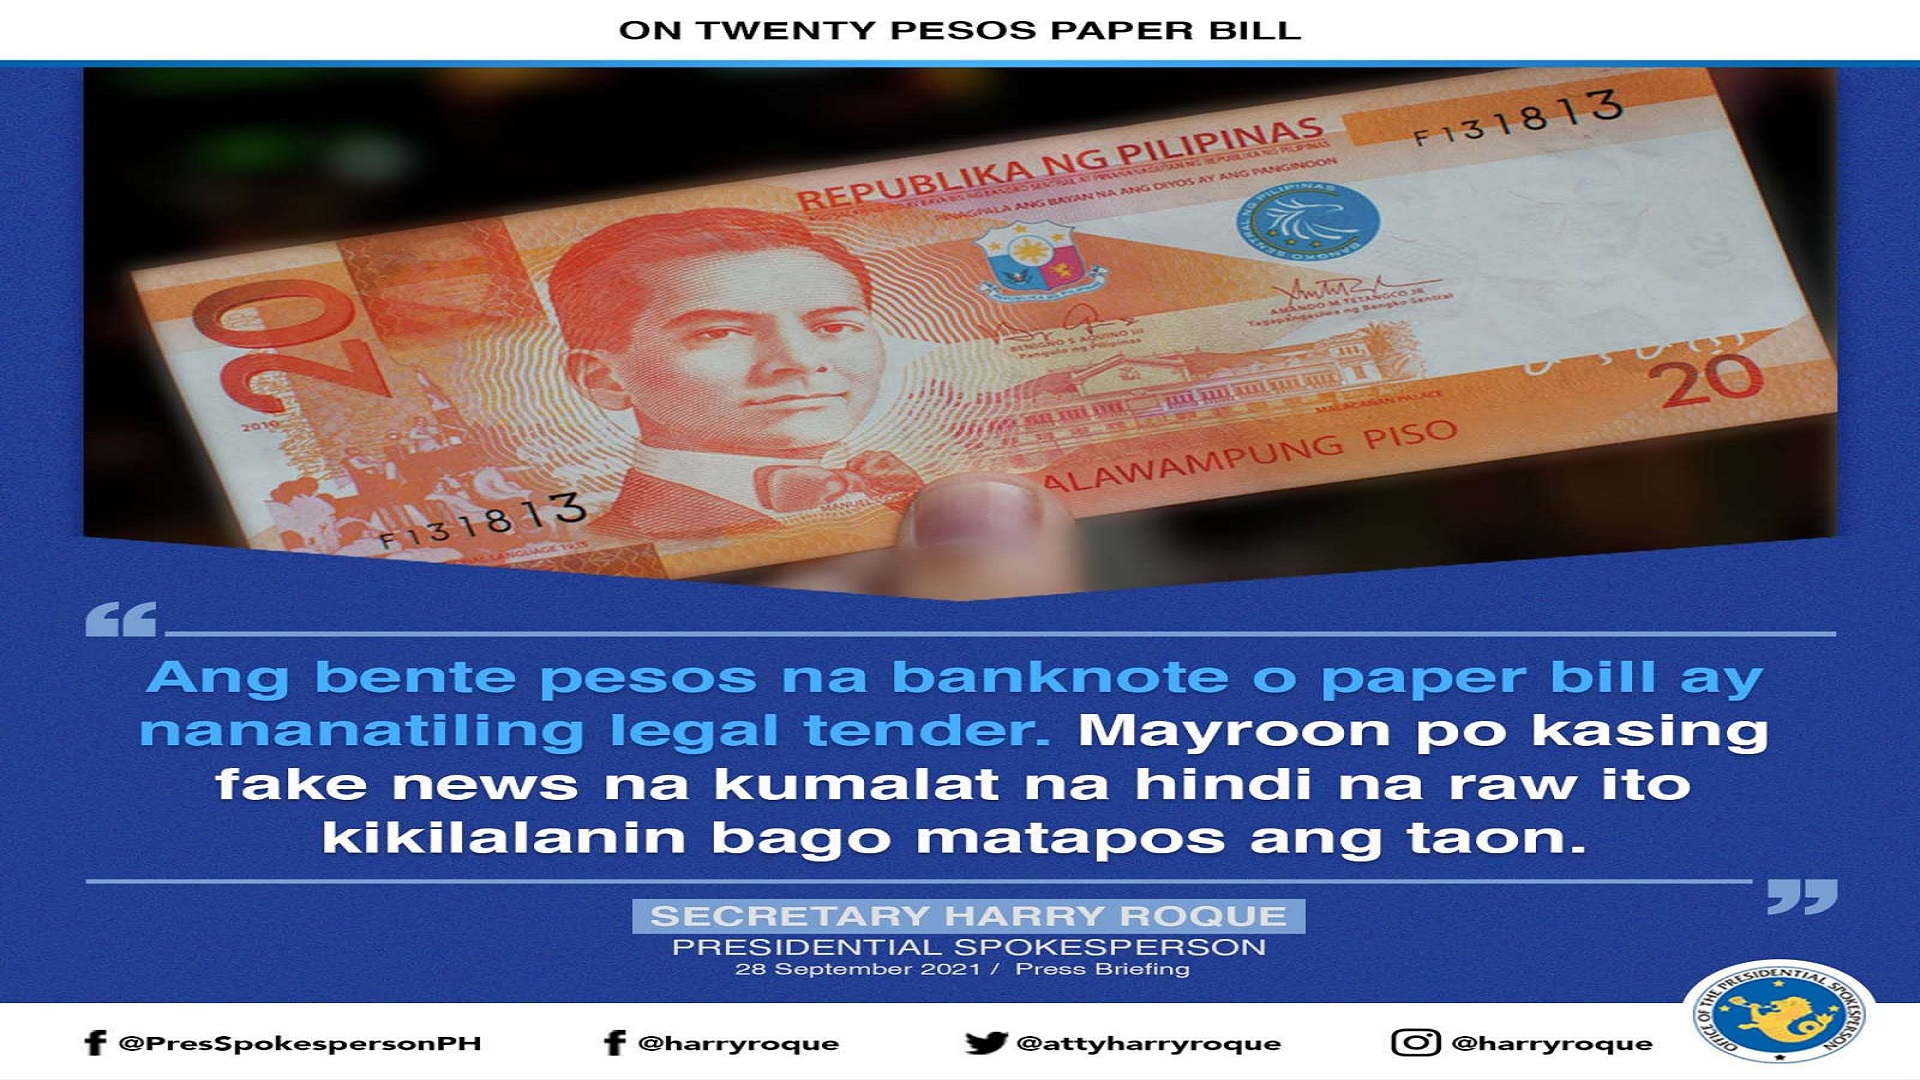 Bente pesos na banknote o paper bill pwede pa ring ipambayad ayon sa Malakanyang at BSP